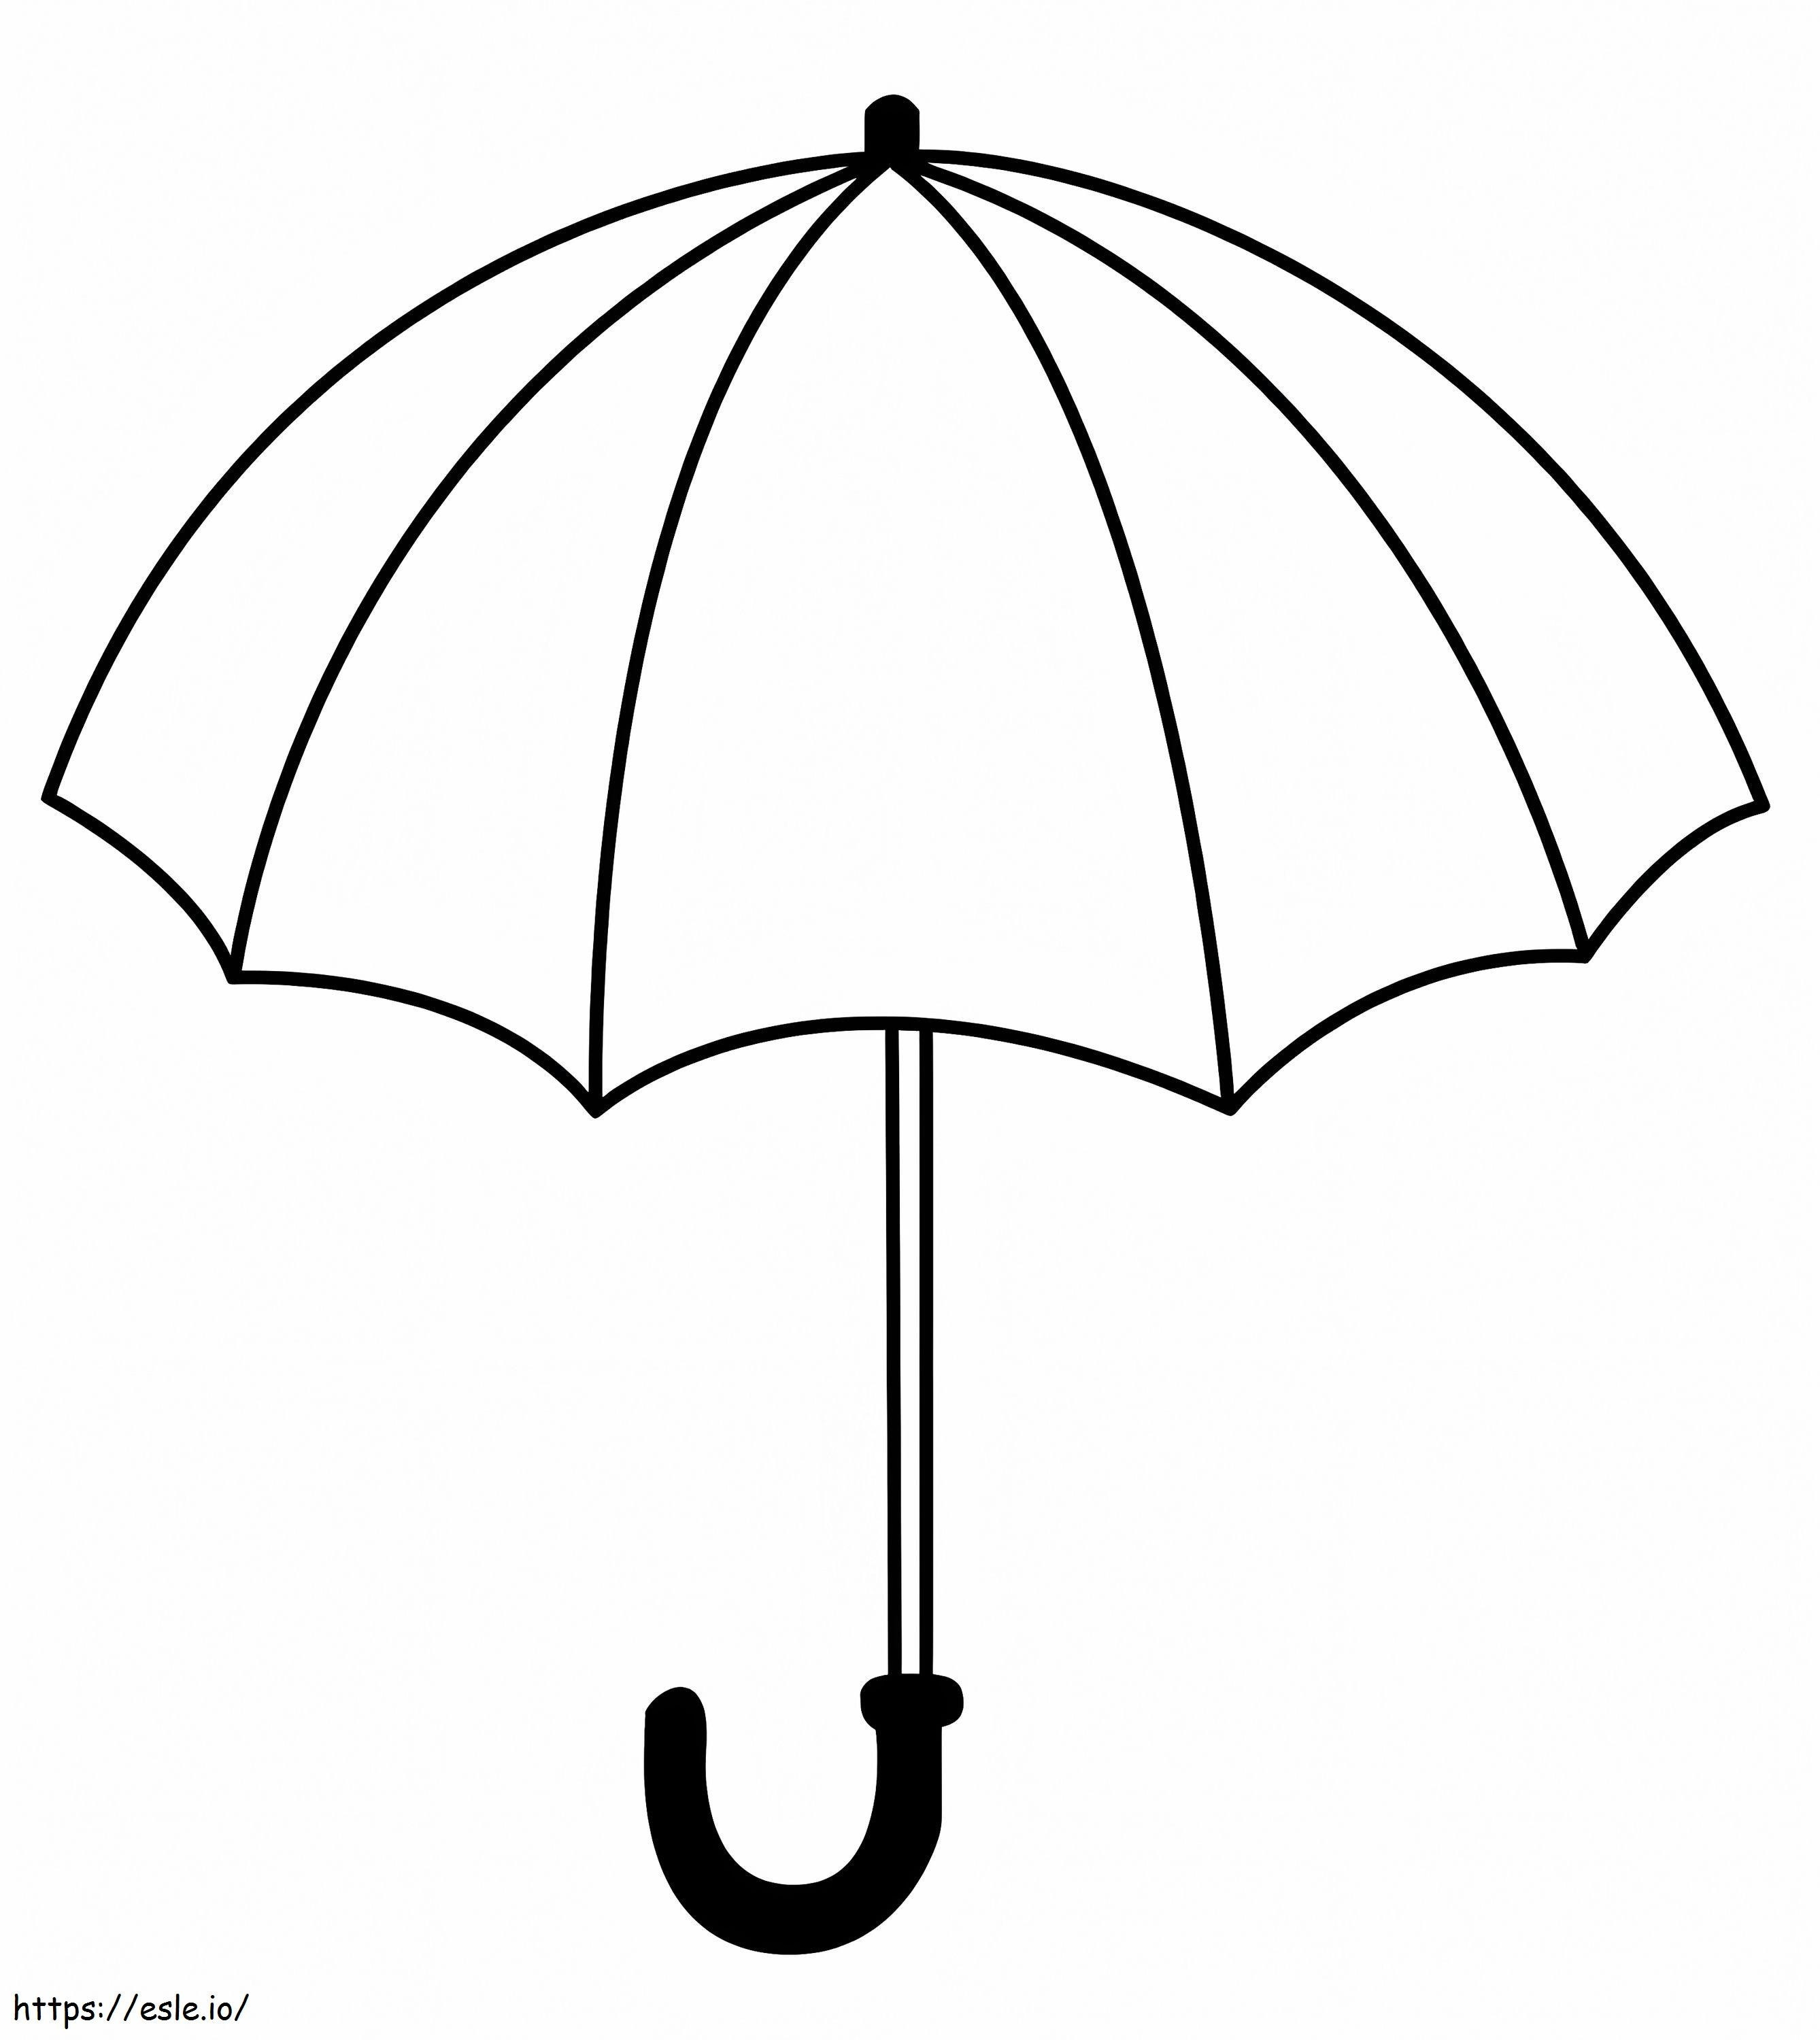 Coloriage Un parapluie à imprimer dessin